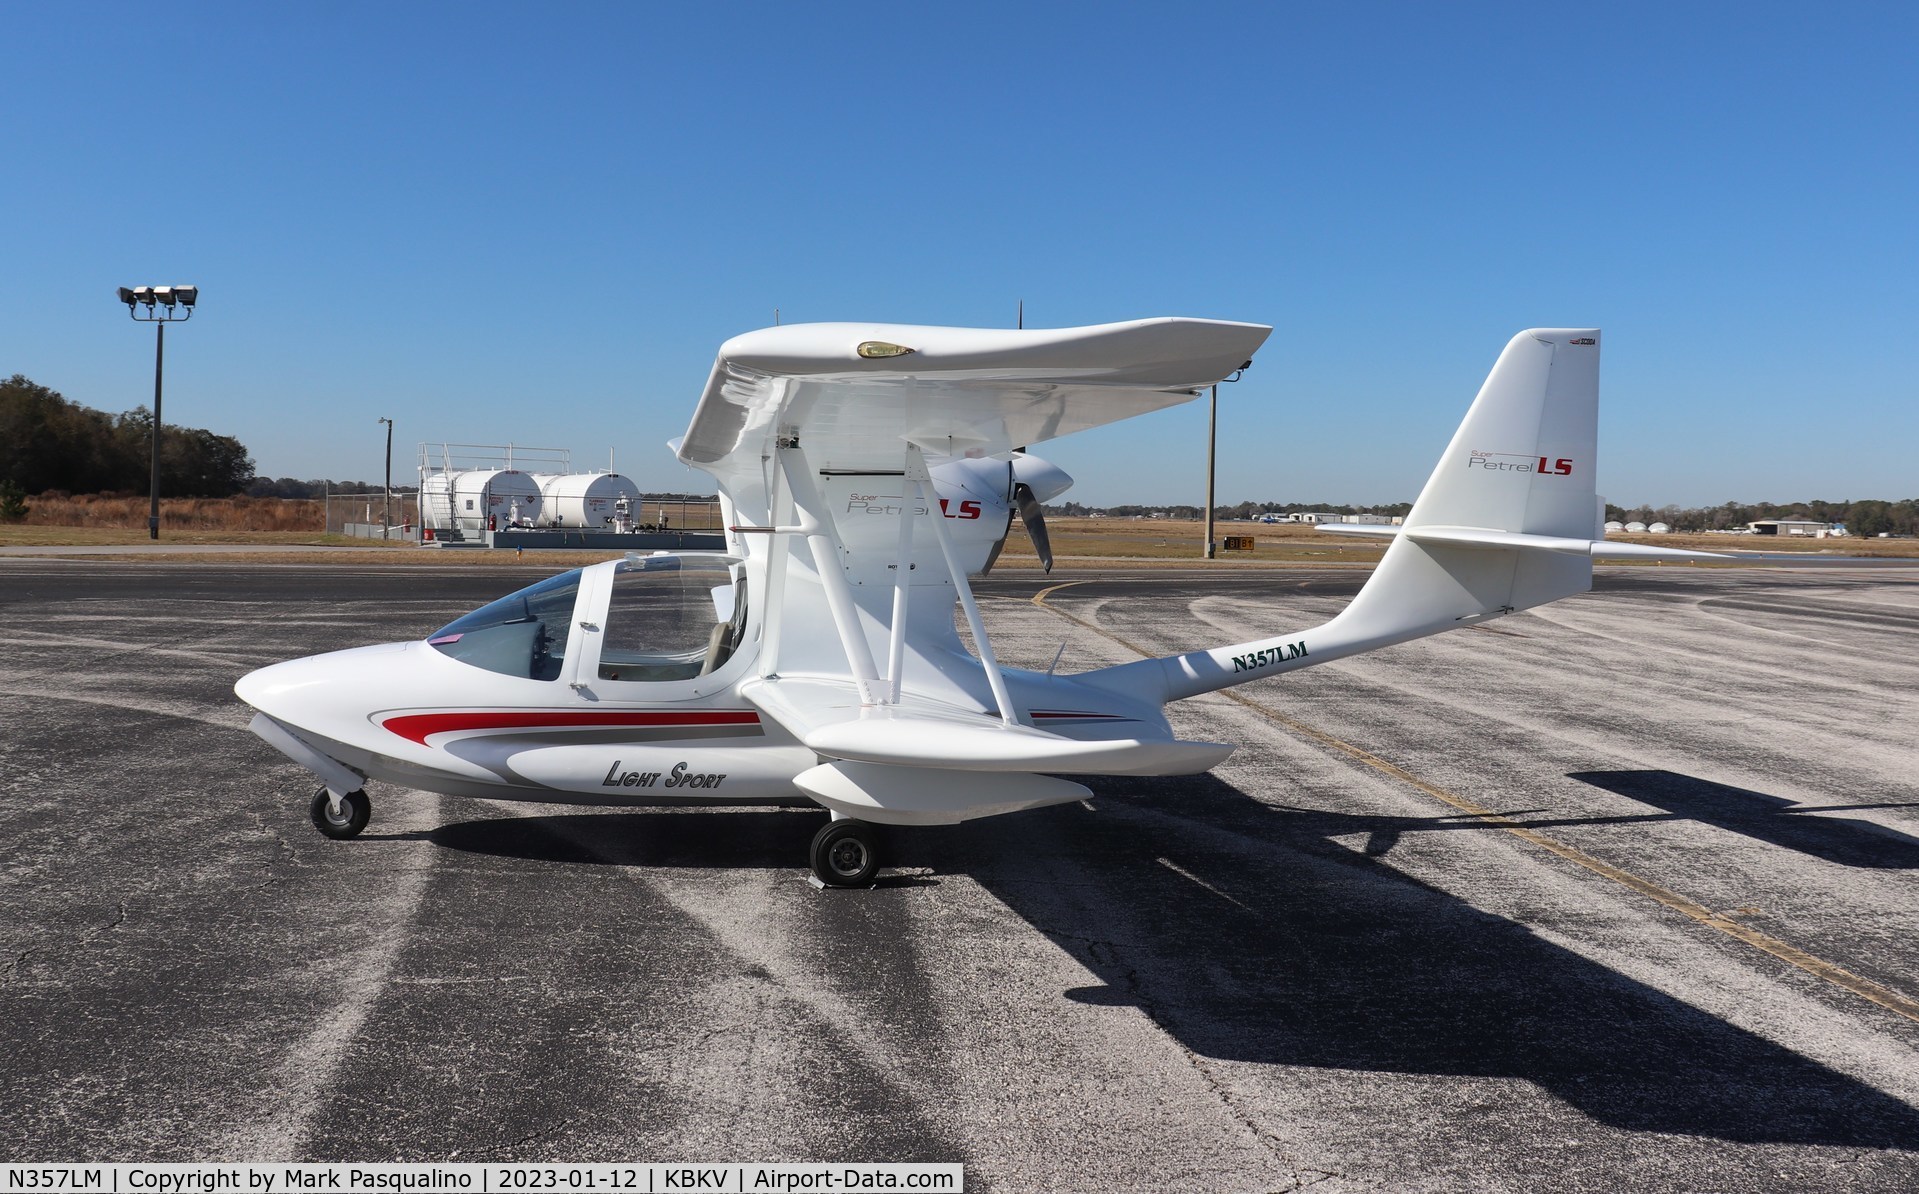 N357LM, 2015 Scoda Aeronautica Super Petrel LS C/N S0348, Super Petrel LS